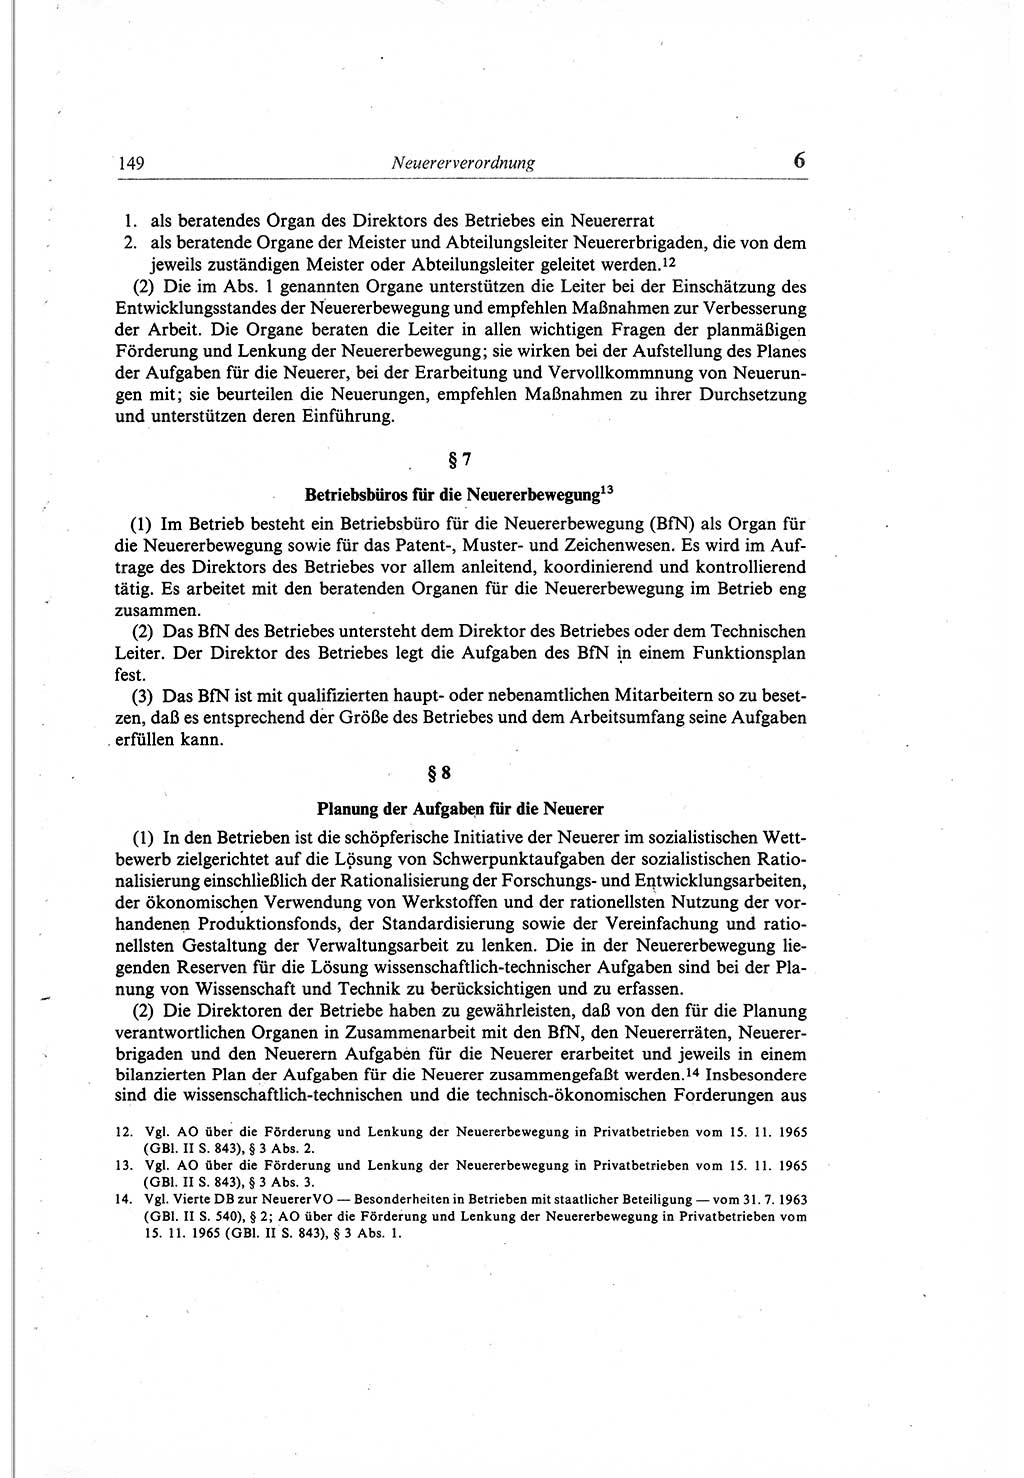 Gesetzbuch der Arbeit (GBA) und andere ausgewählte rechtliche Bestimmungen [Deutsche Demokratische Republik (DDR)] 1968, Seite 149 (GBA DDR 1968, S. 149)